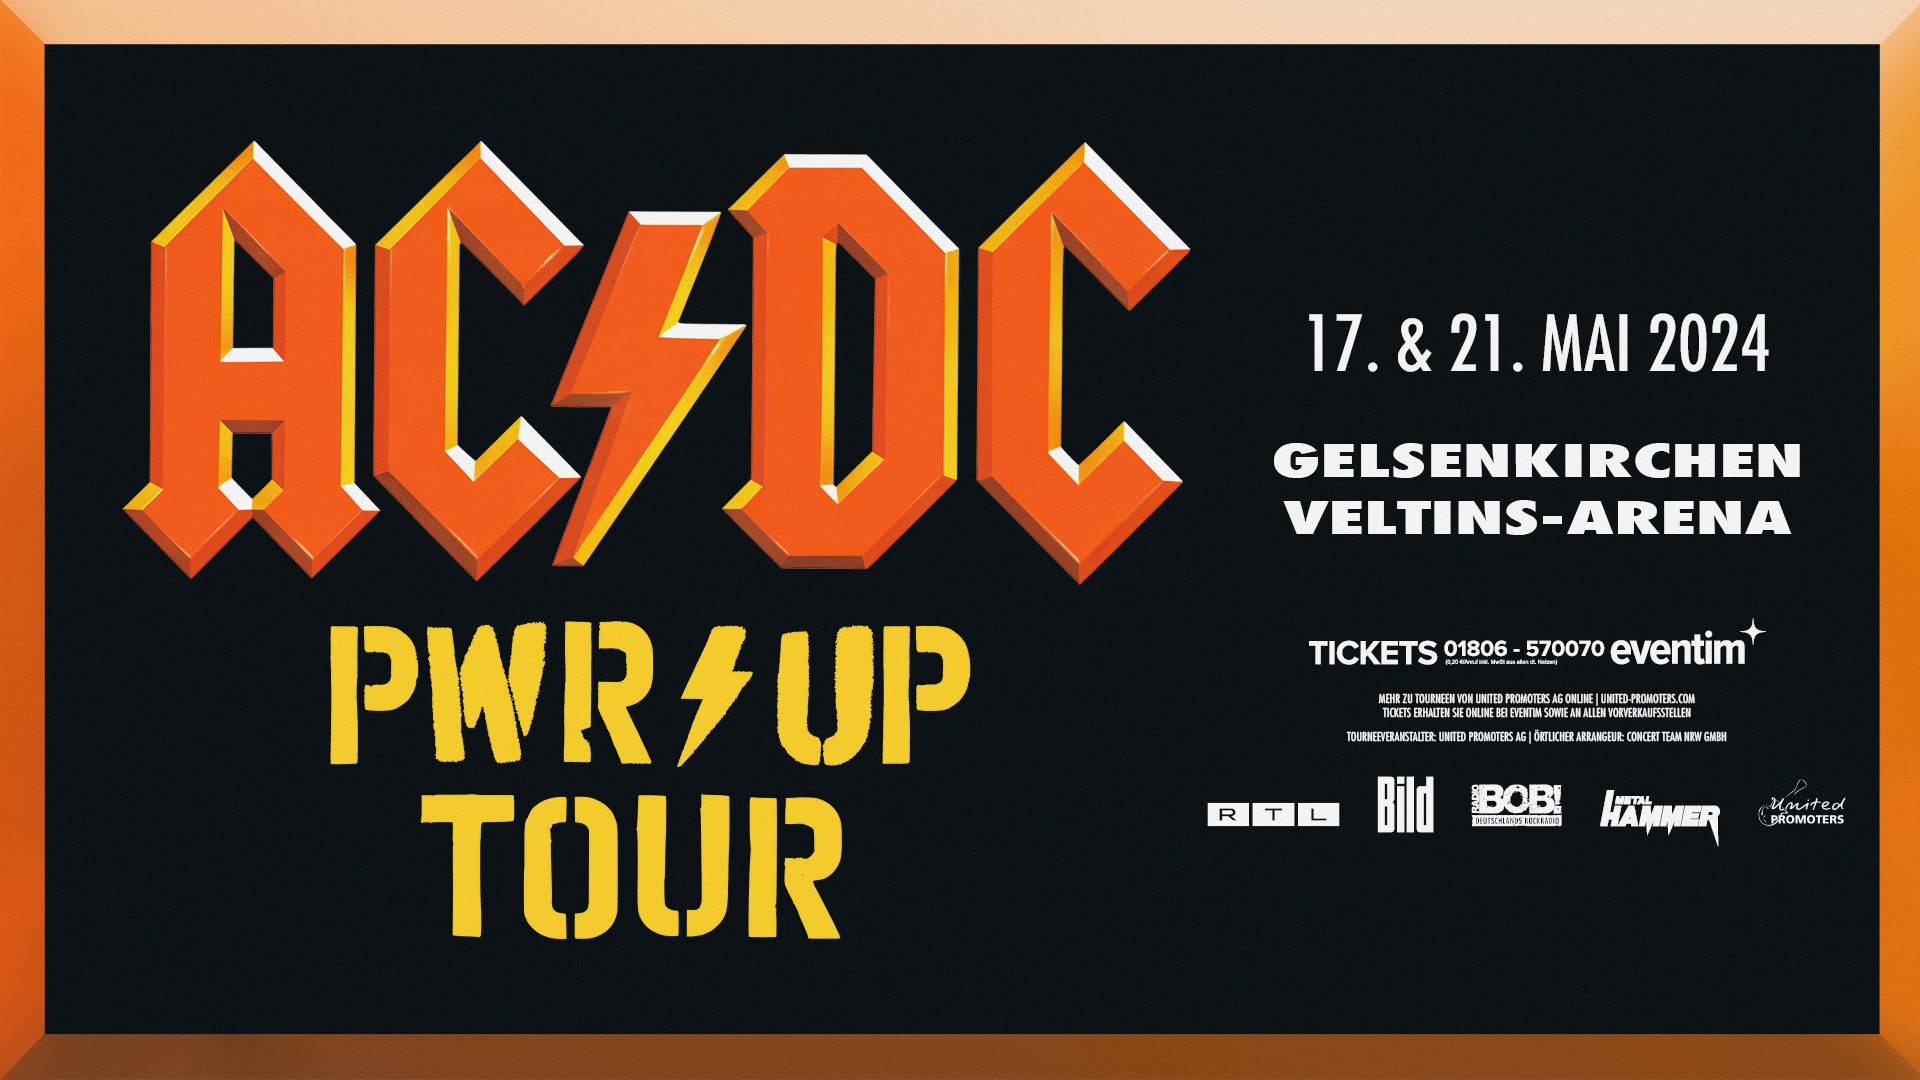 AC/DC "POWER UP" tour